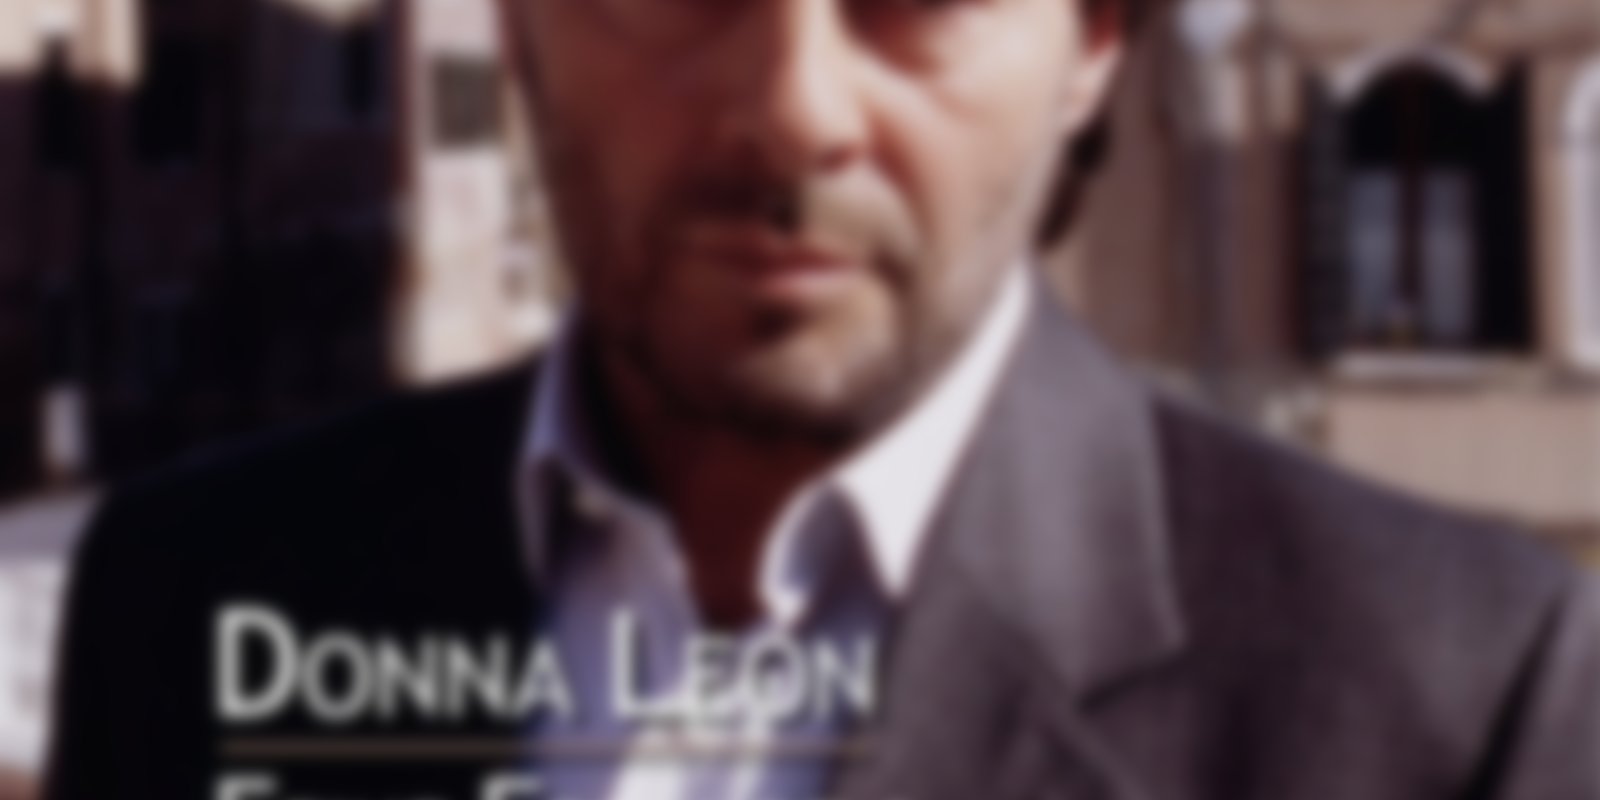 Donna Leon - Feine Freunde & Das Gesetz der Lagune